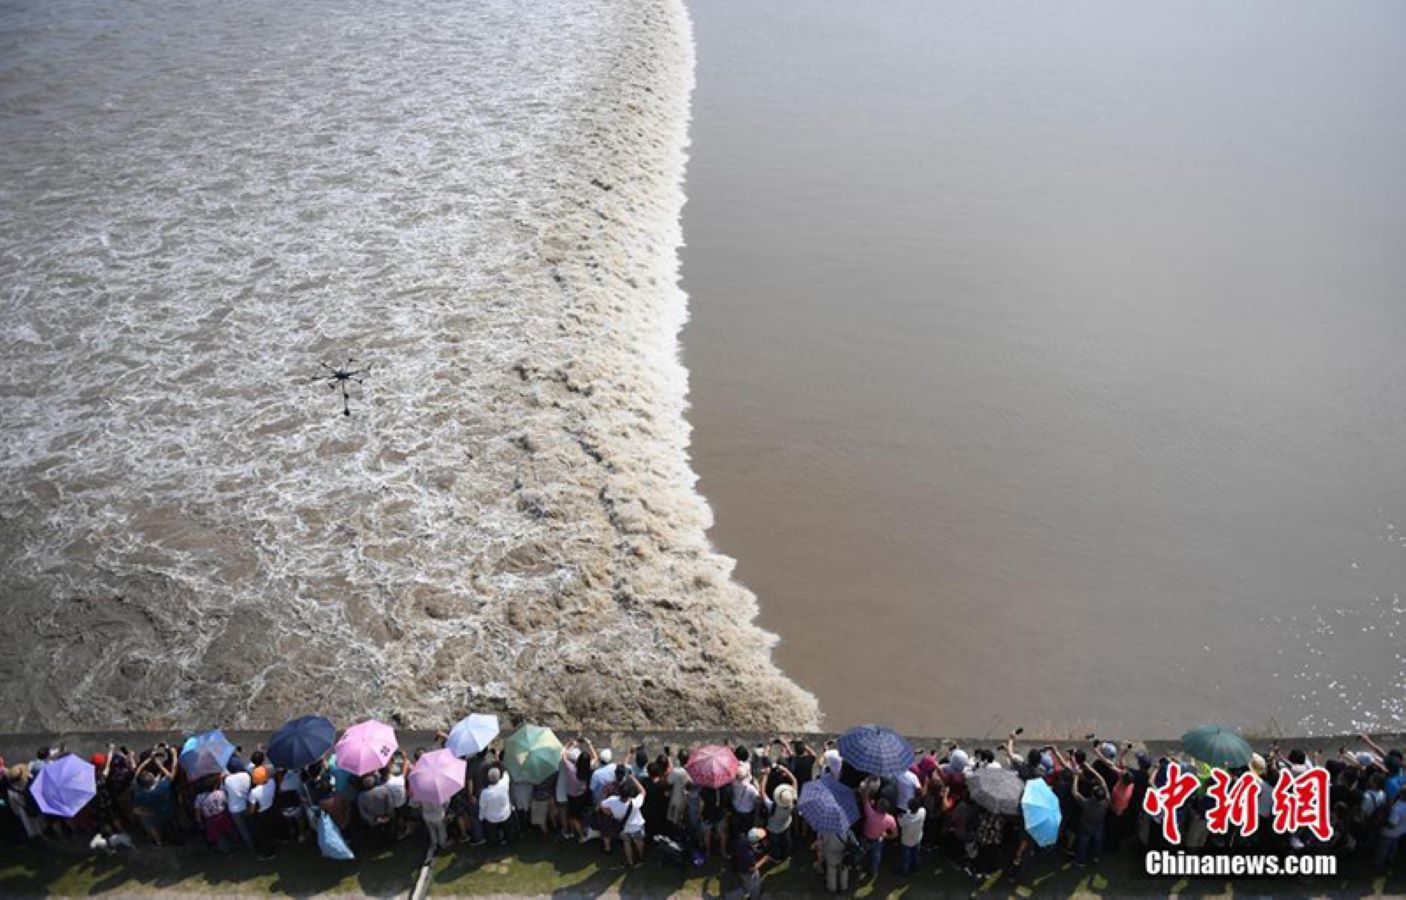 منظر فريد في نهرتشيان تهانغ الصيني.. المياه تبدو مثل قشور الأسماك